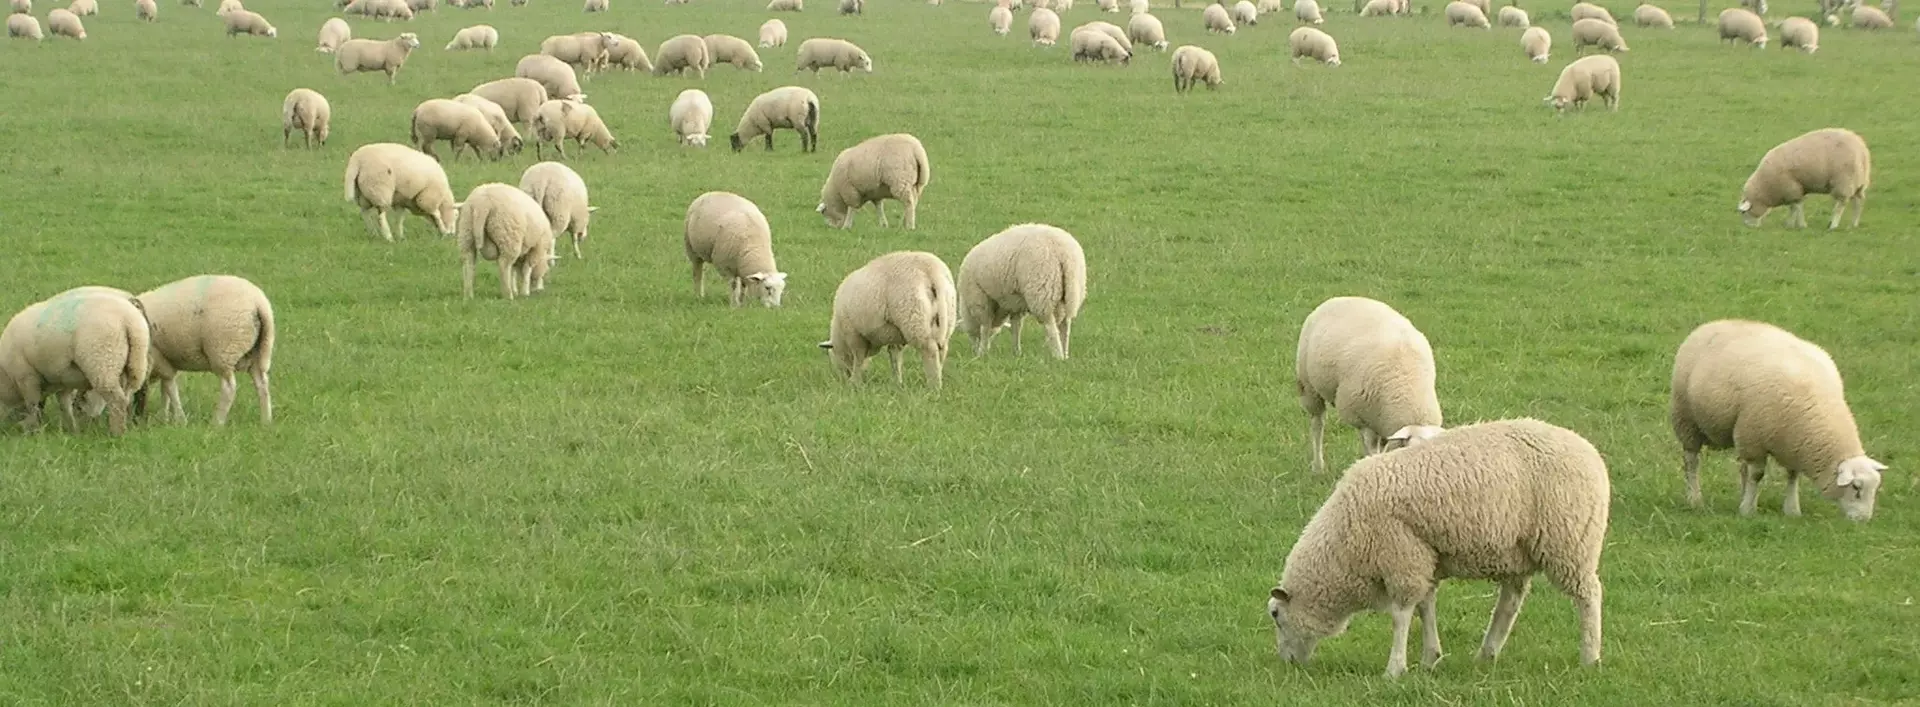 Schafe der Schäferei Bährs weiden auf saftigen Weiden in Dithmarschen in Schleswig-Holstein.